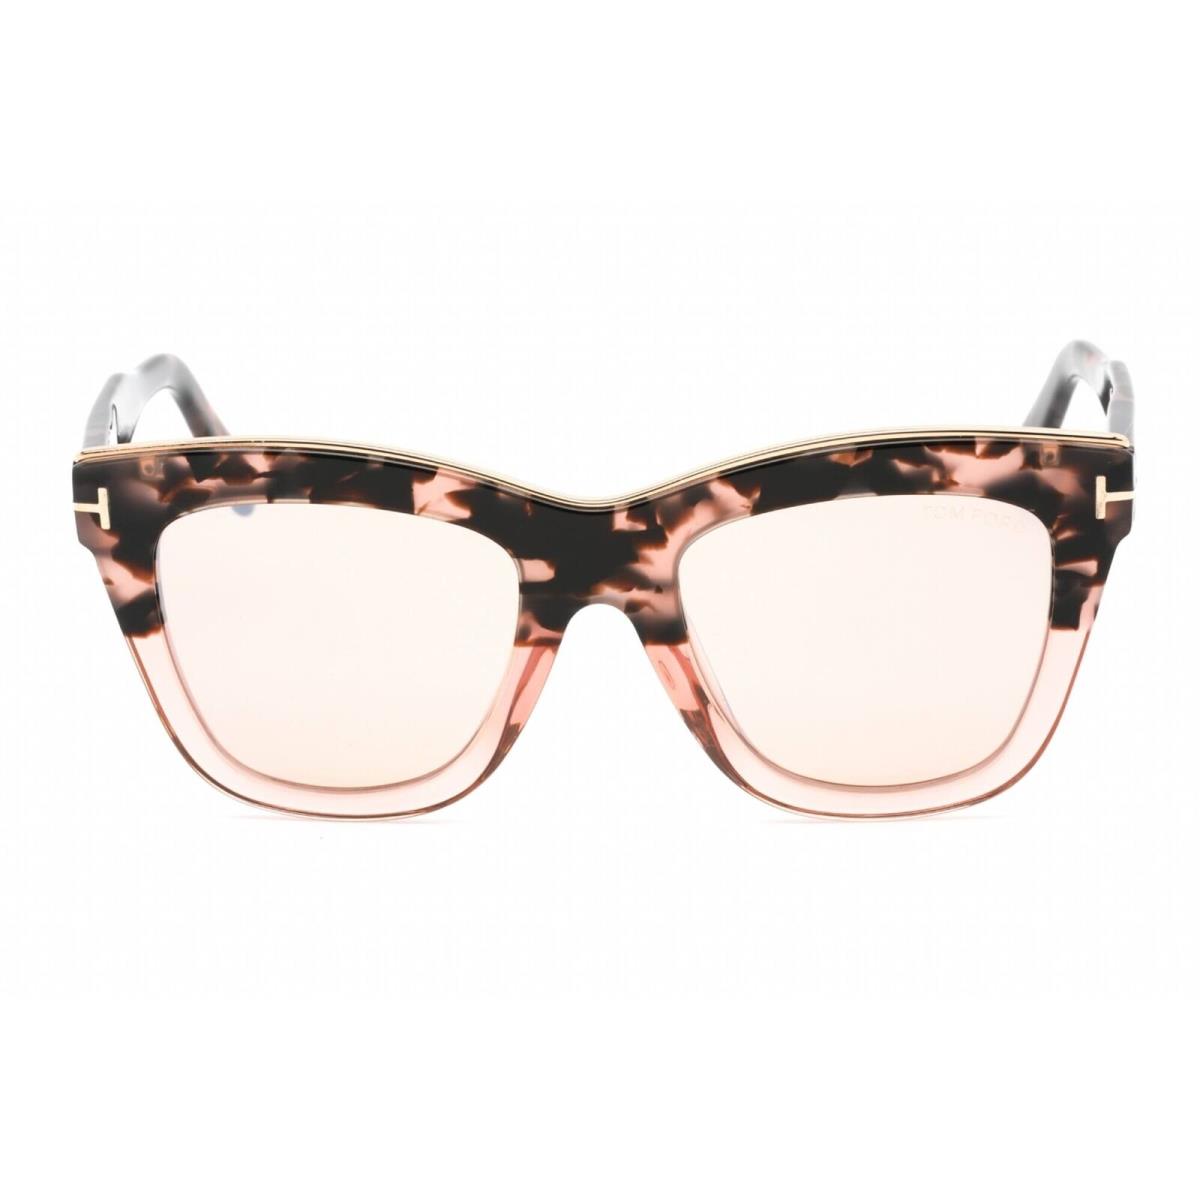 Tom Ford Women`s Sunglasses Pink Havana Plastic Cat Eye Shape Frame FT0685 56G